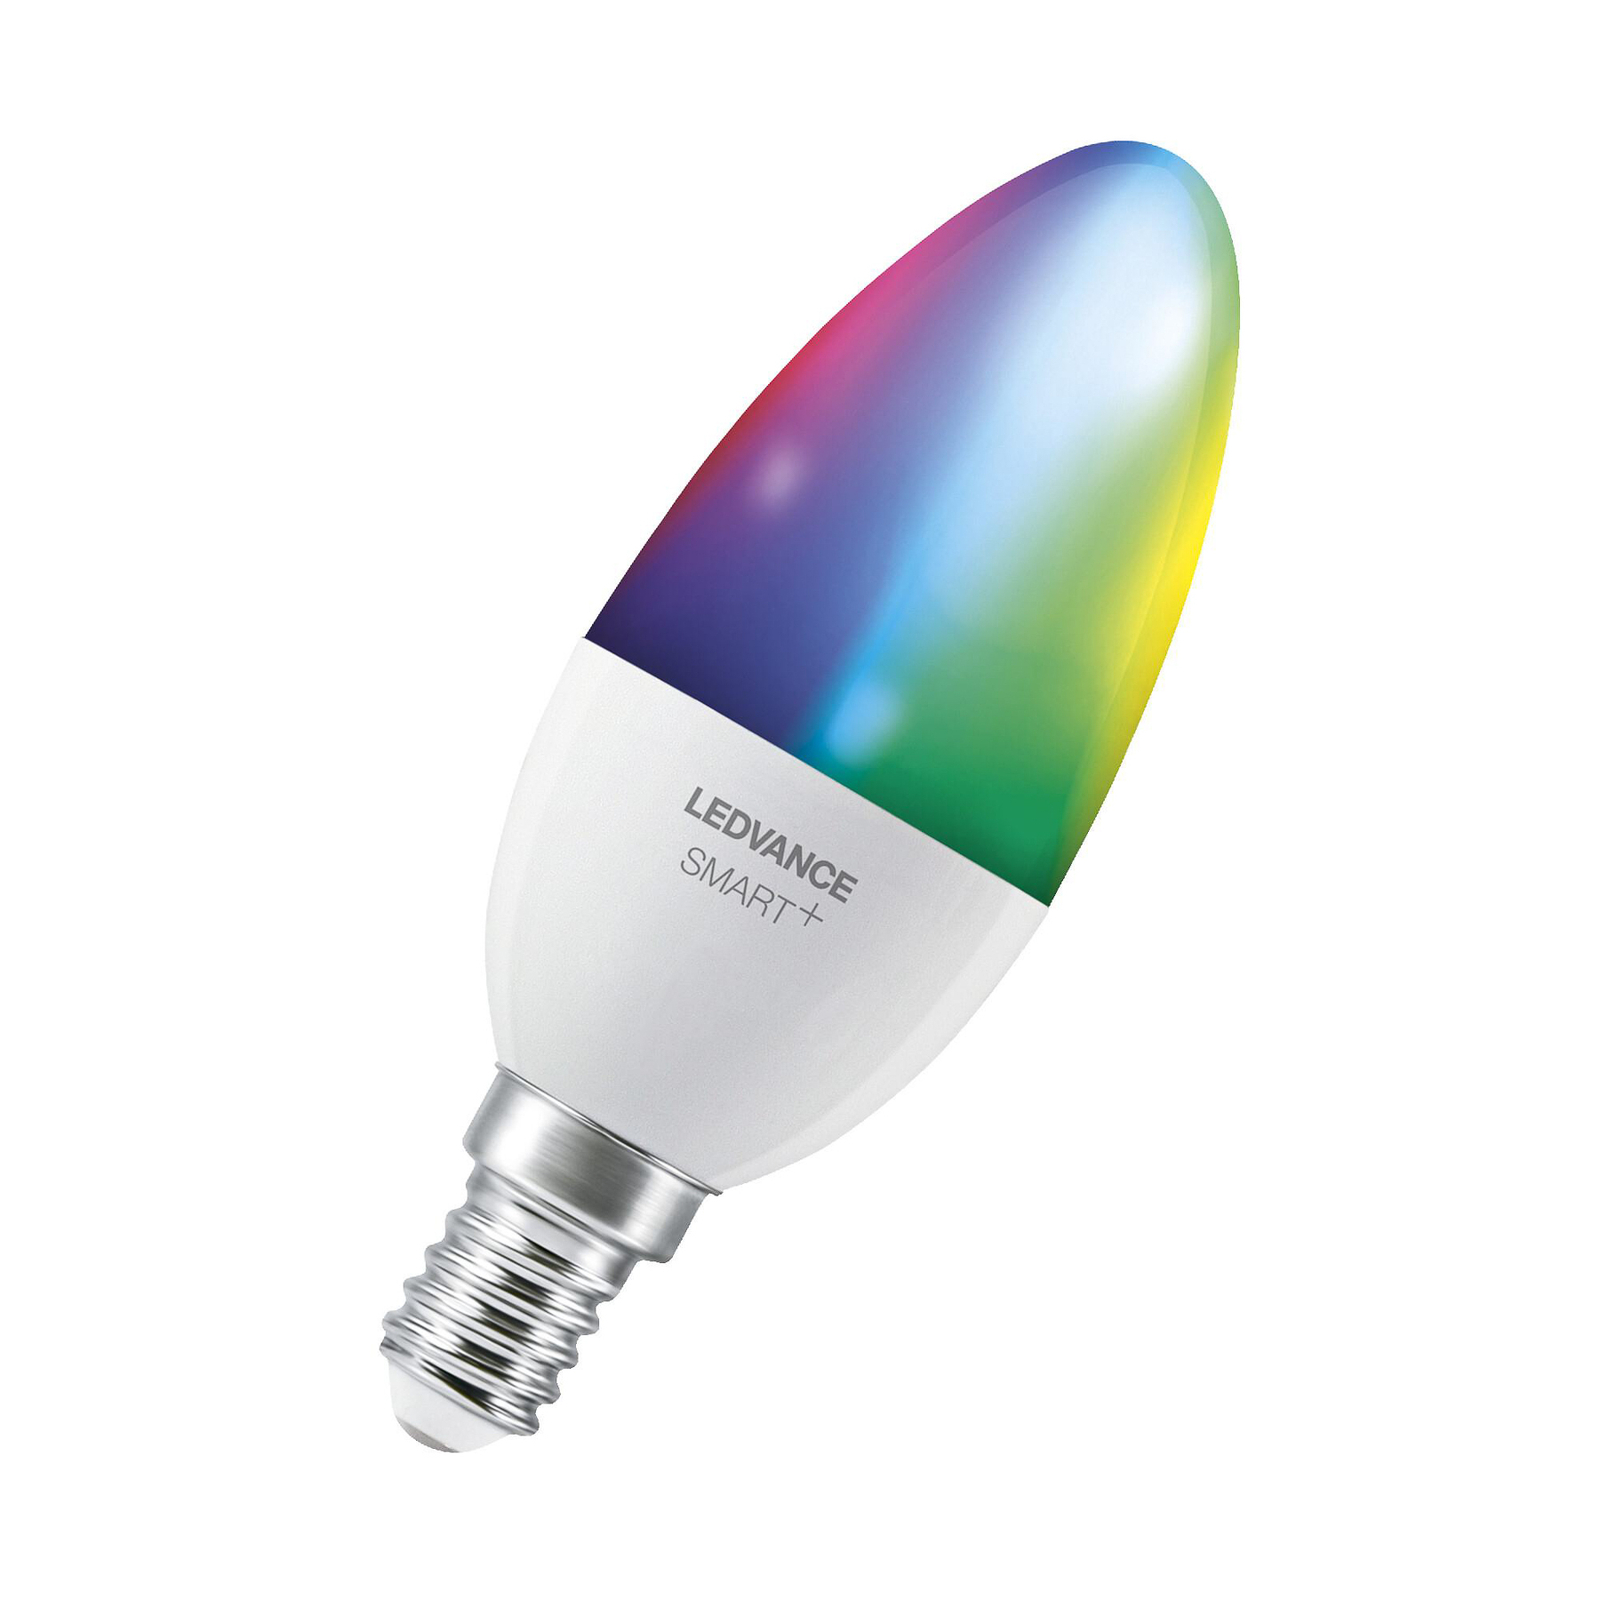 LEDVANCE SMART+ LED, vela, E14, 4,9 W, CCT, RGB, WiFi, 3 unidades